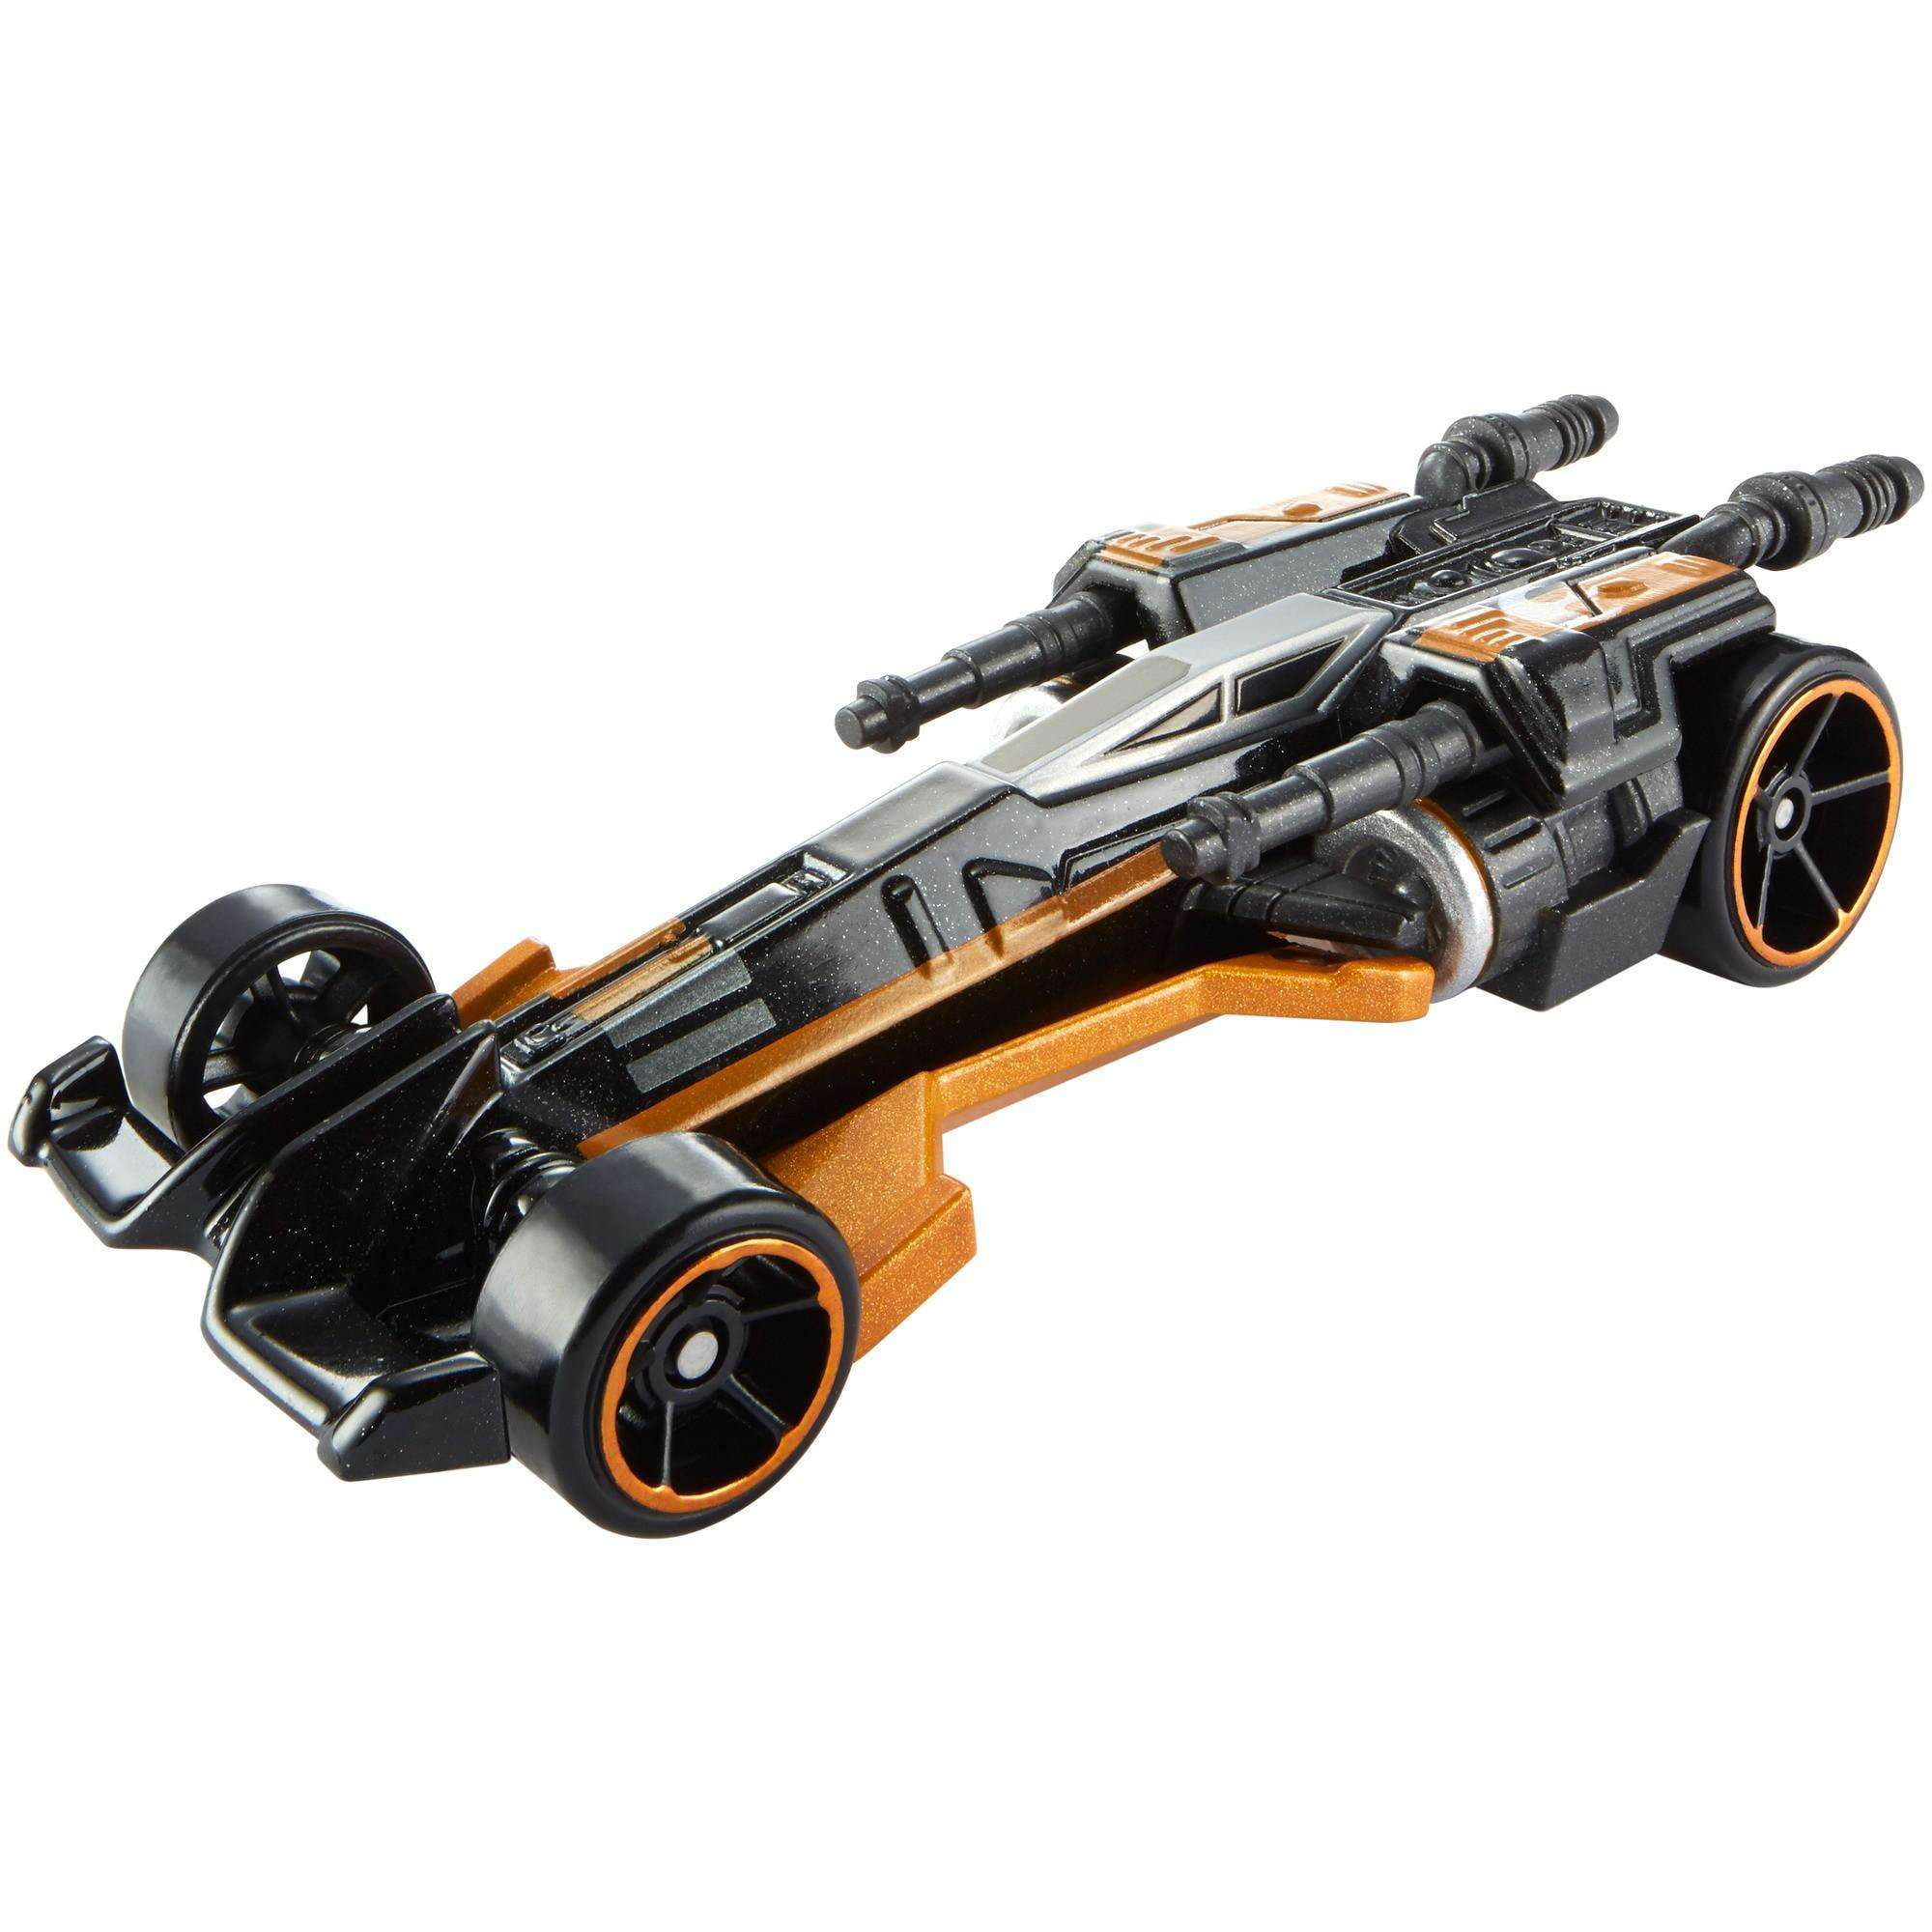 Hot Wheels Star Wars Poe’s X-Wing Fighter Car Figure 